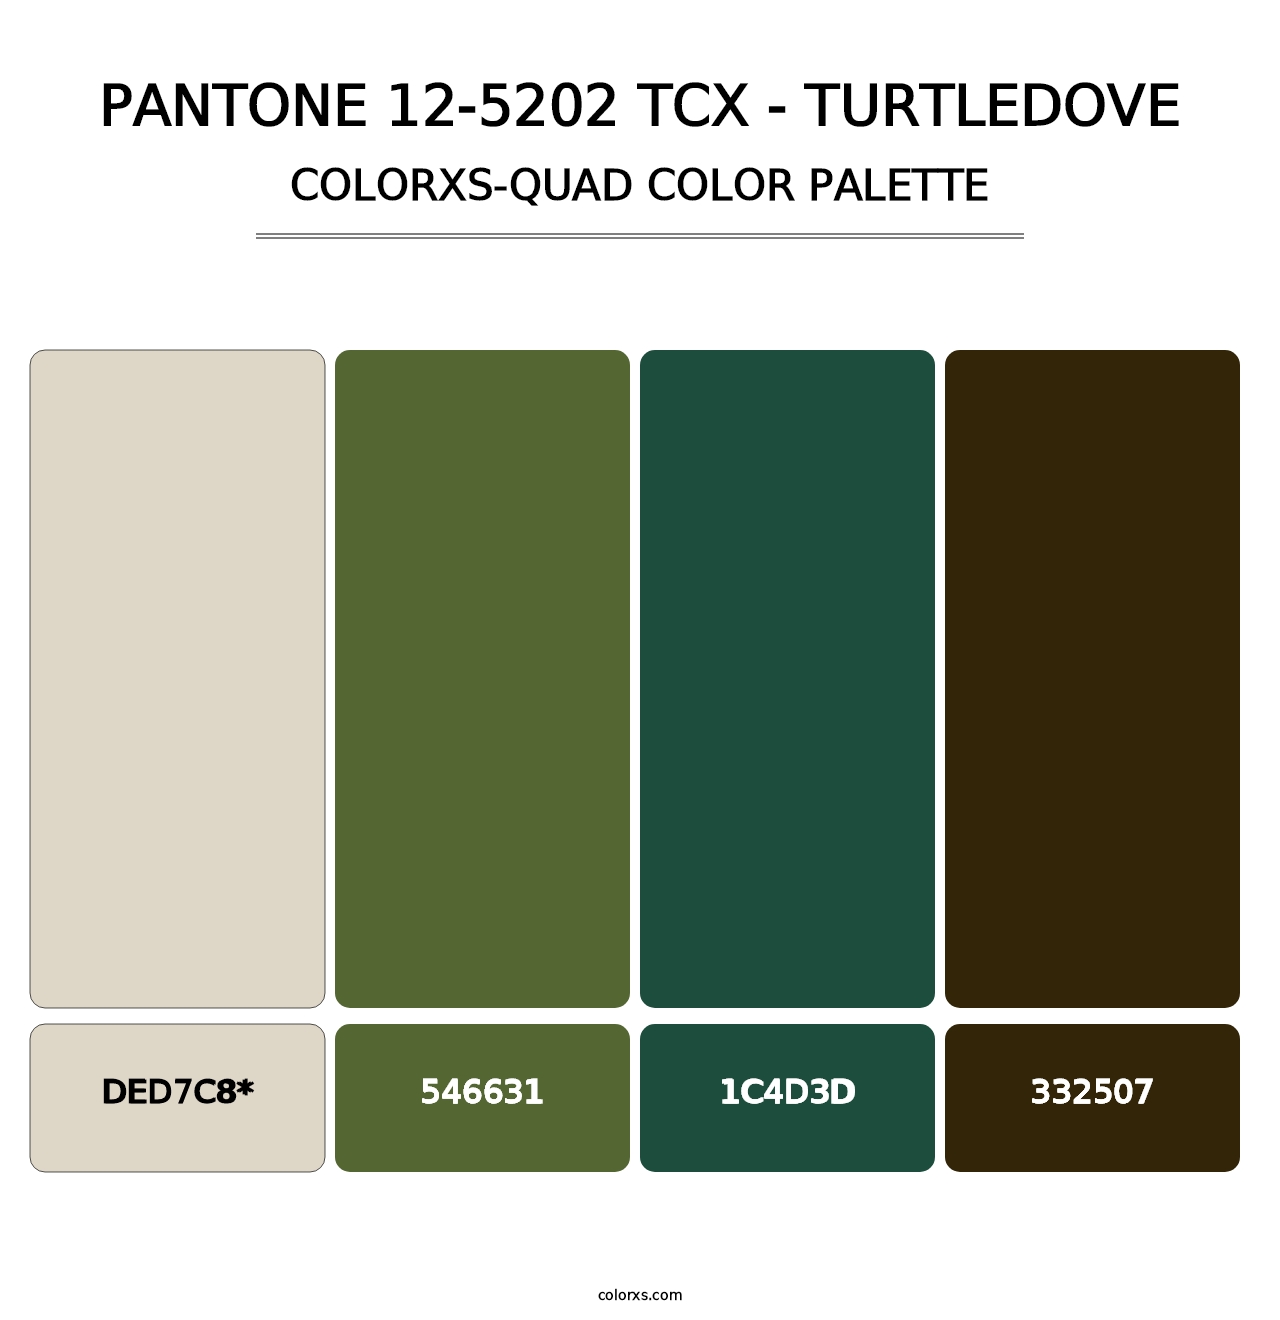 PANTONE 12-5202 TCX - Turtledove - Colorxs Quad Palette